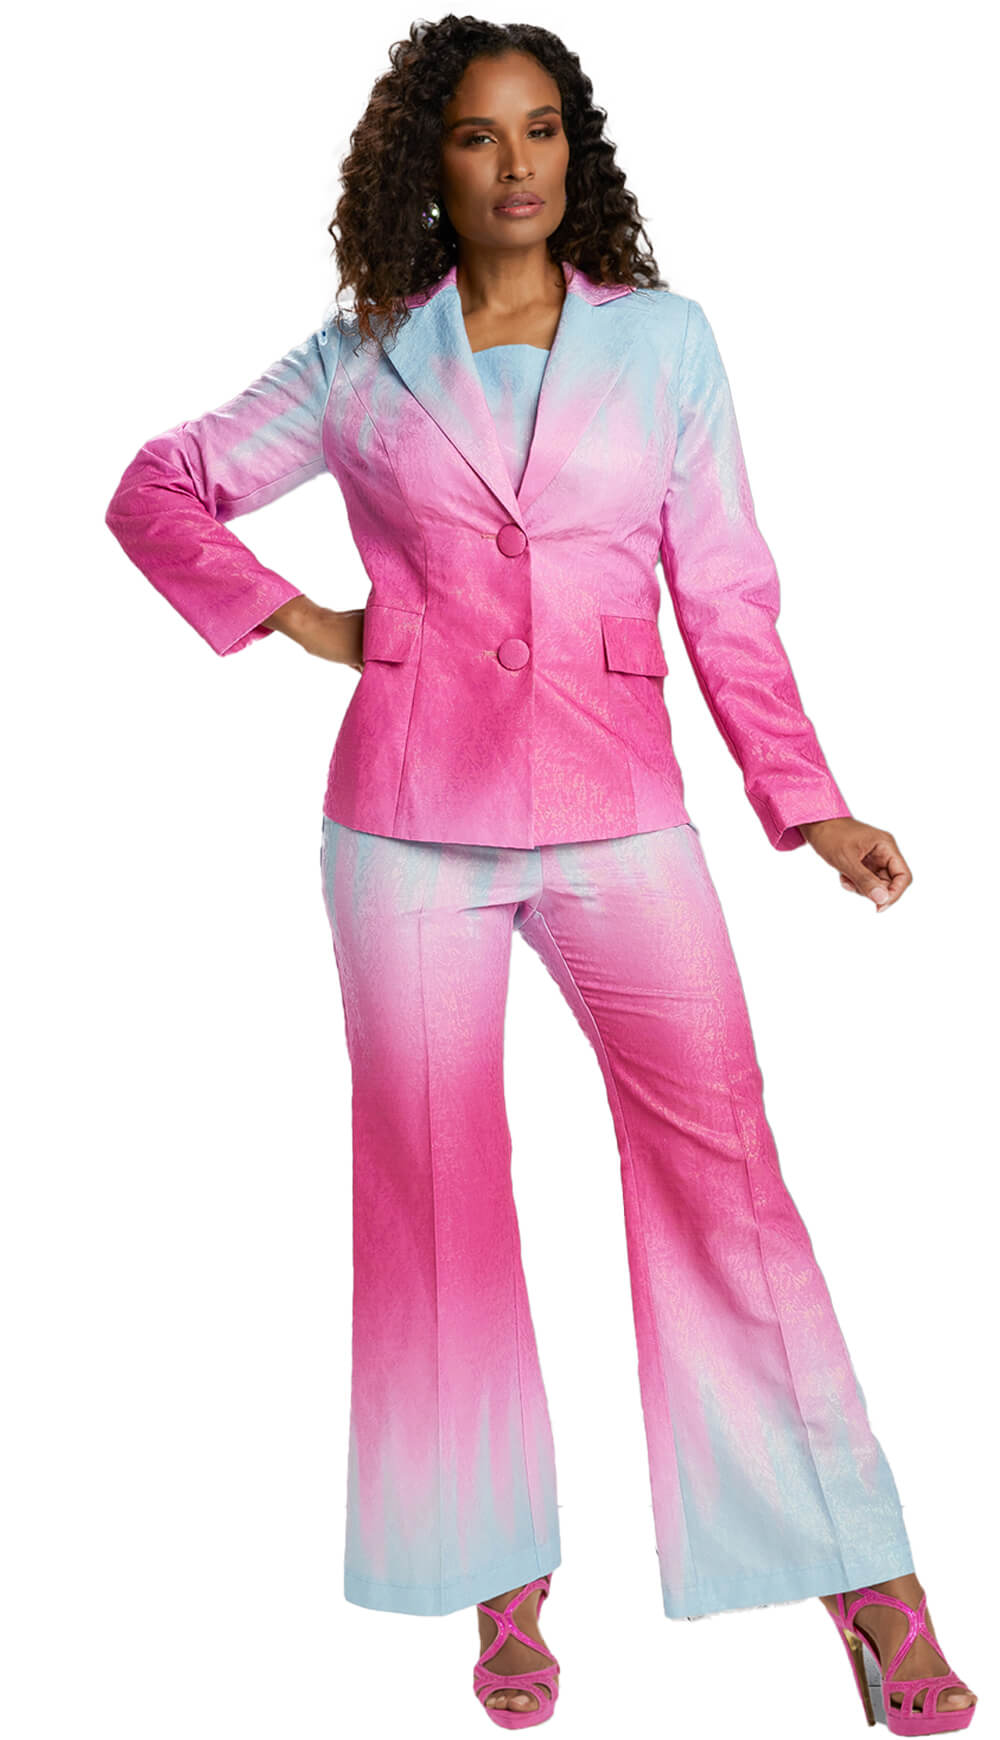 Donna Vinci Pant Suit 5801 - Church Suits For Less